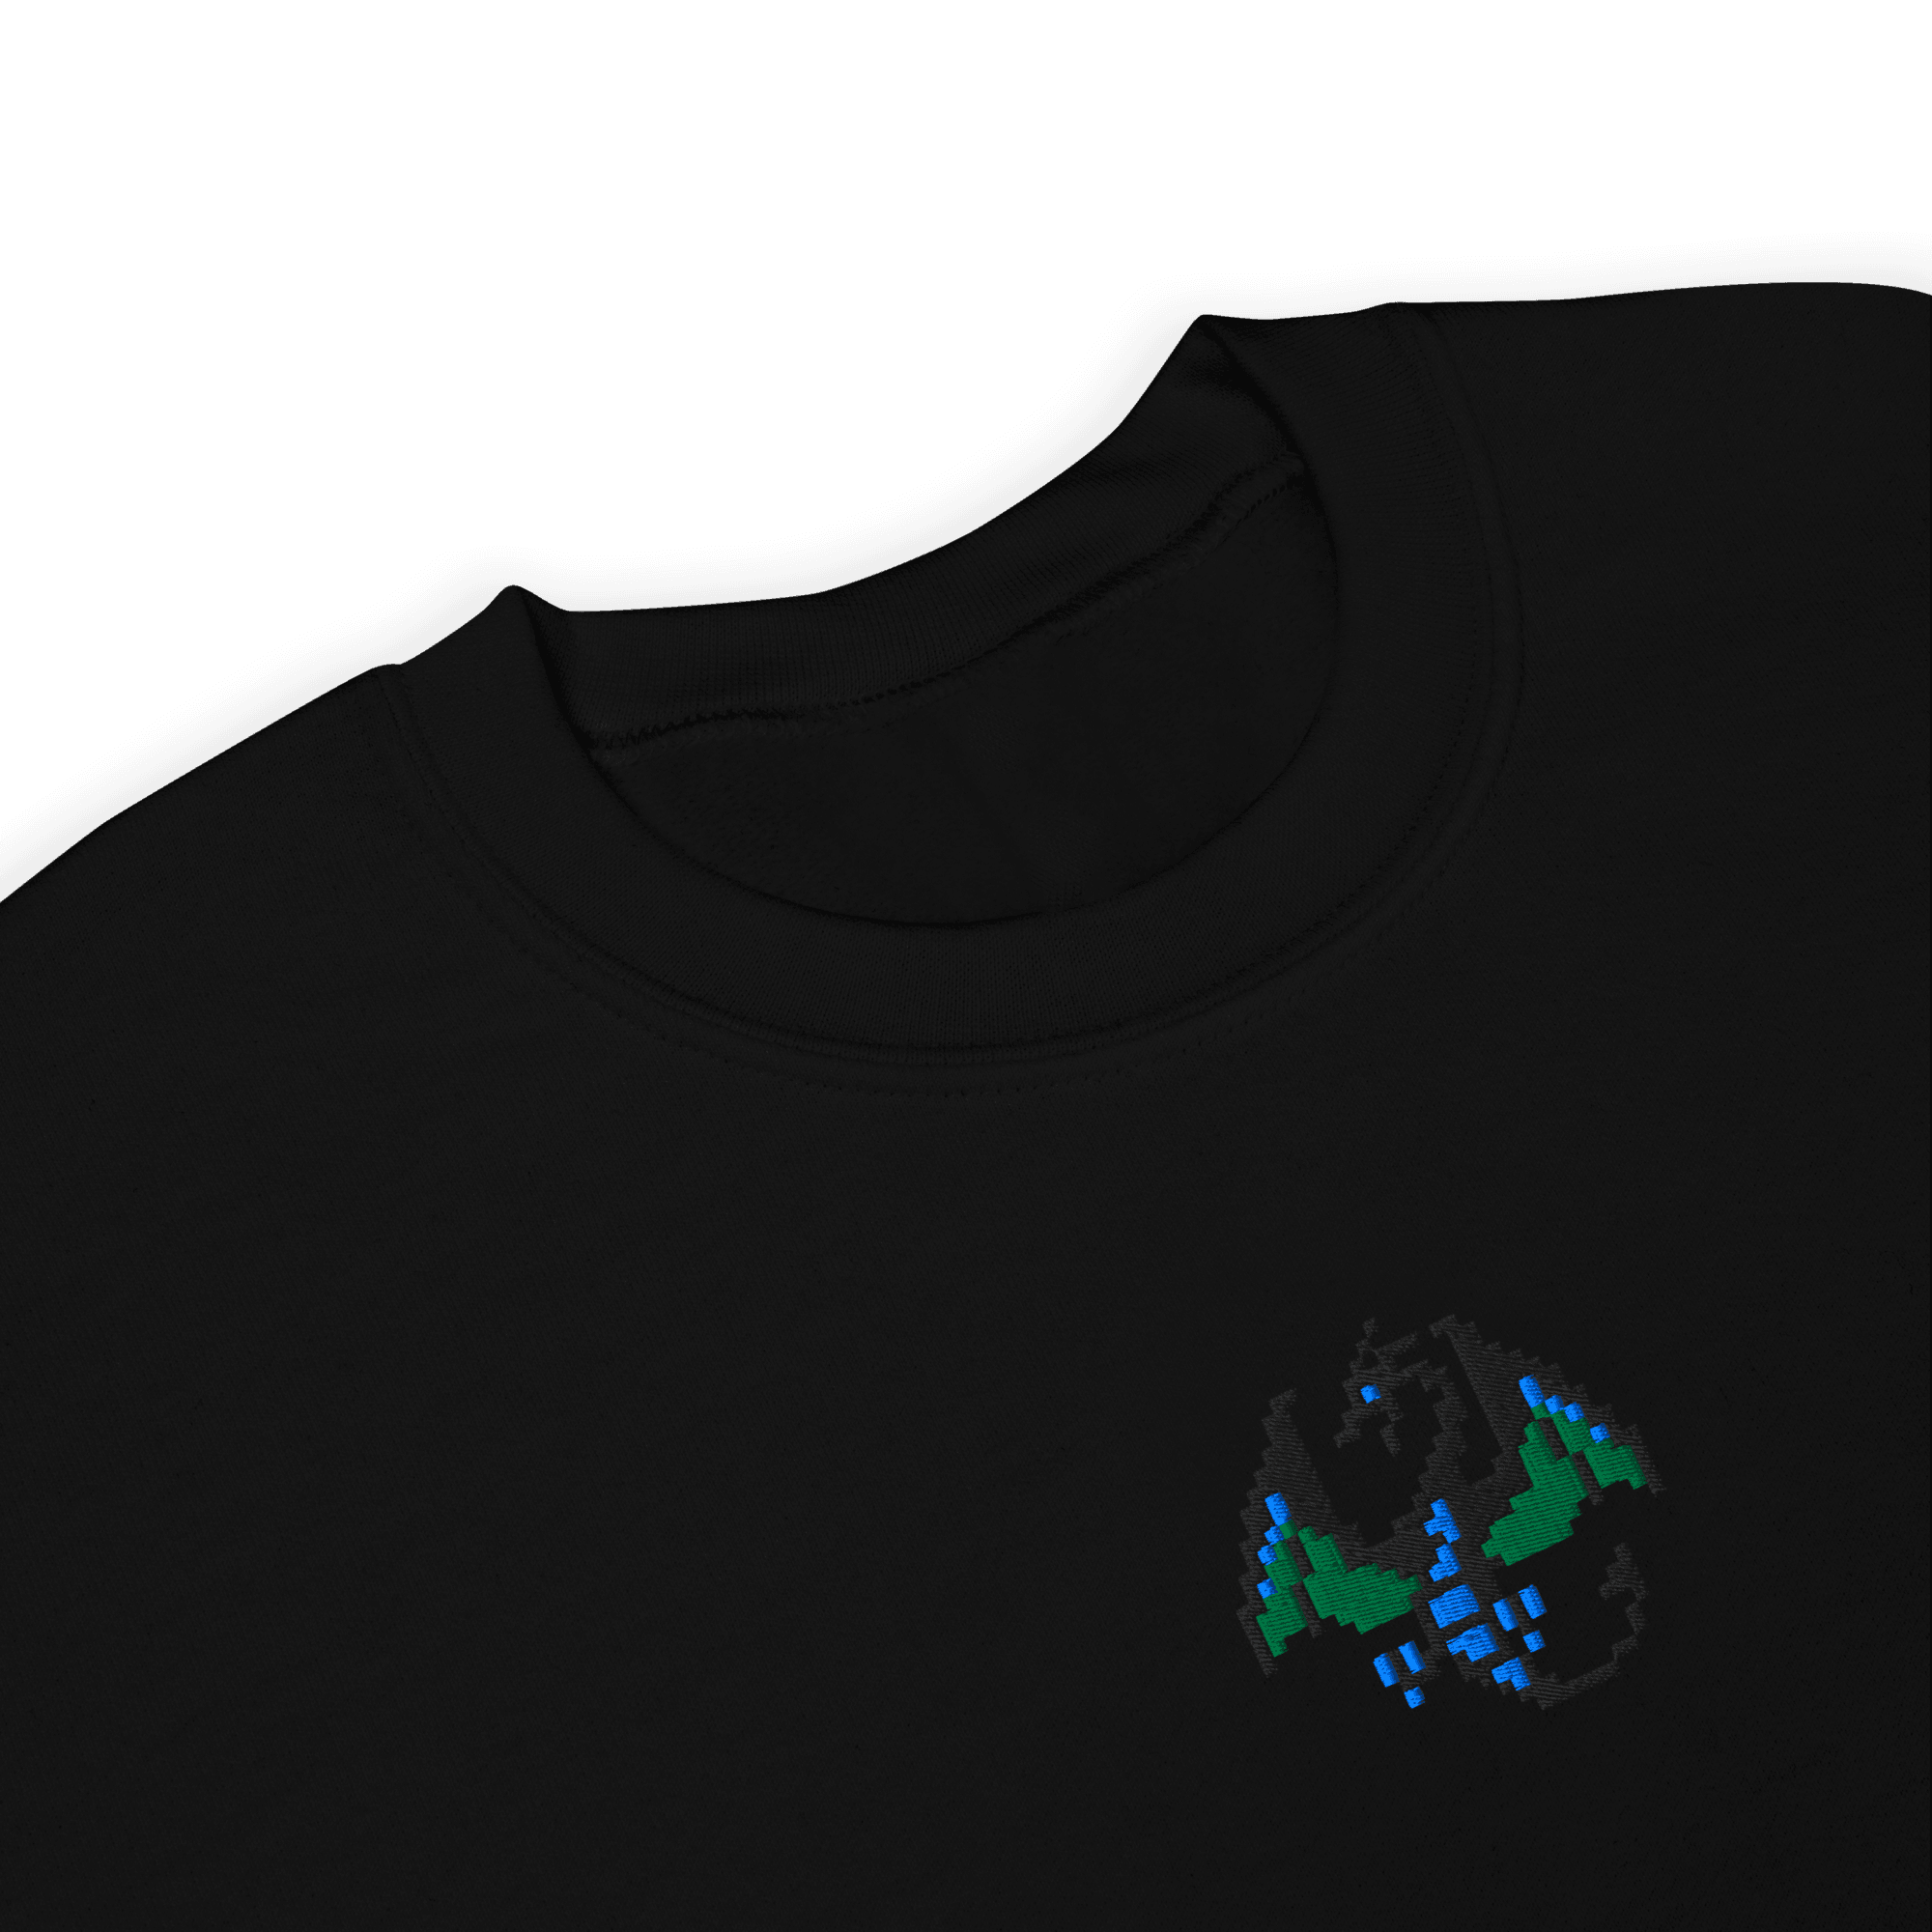 Grotesk 8® Embroidered Sweatshirt - Kikillo Club